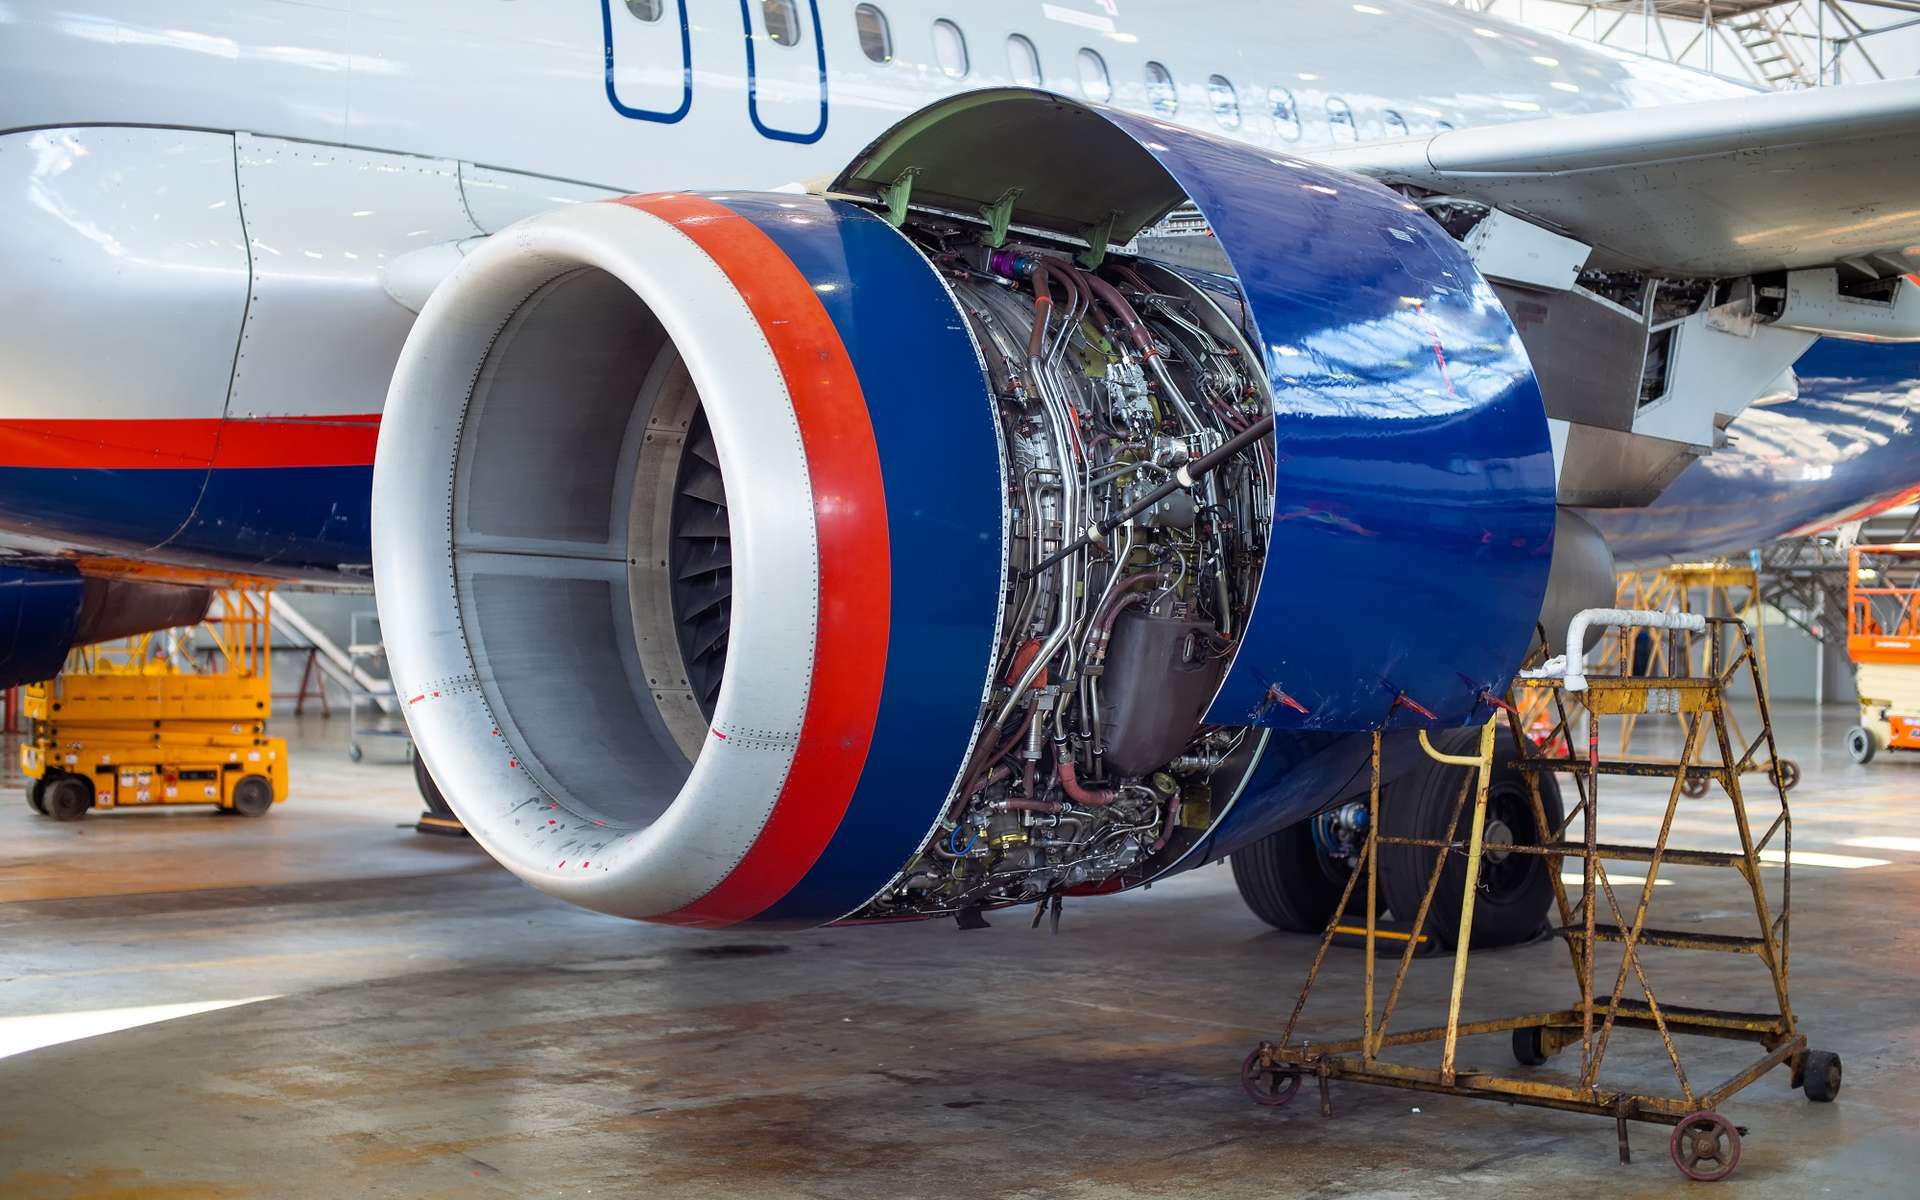 L'ingénieur aéronautique doit suivre un programme de maintenance très précis pour pouvoir garder les avions en service. © evsafronov, Adobe Stock